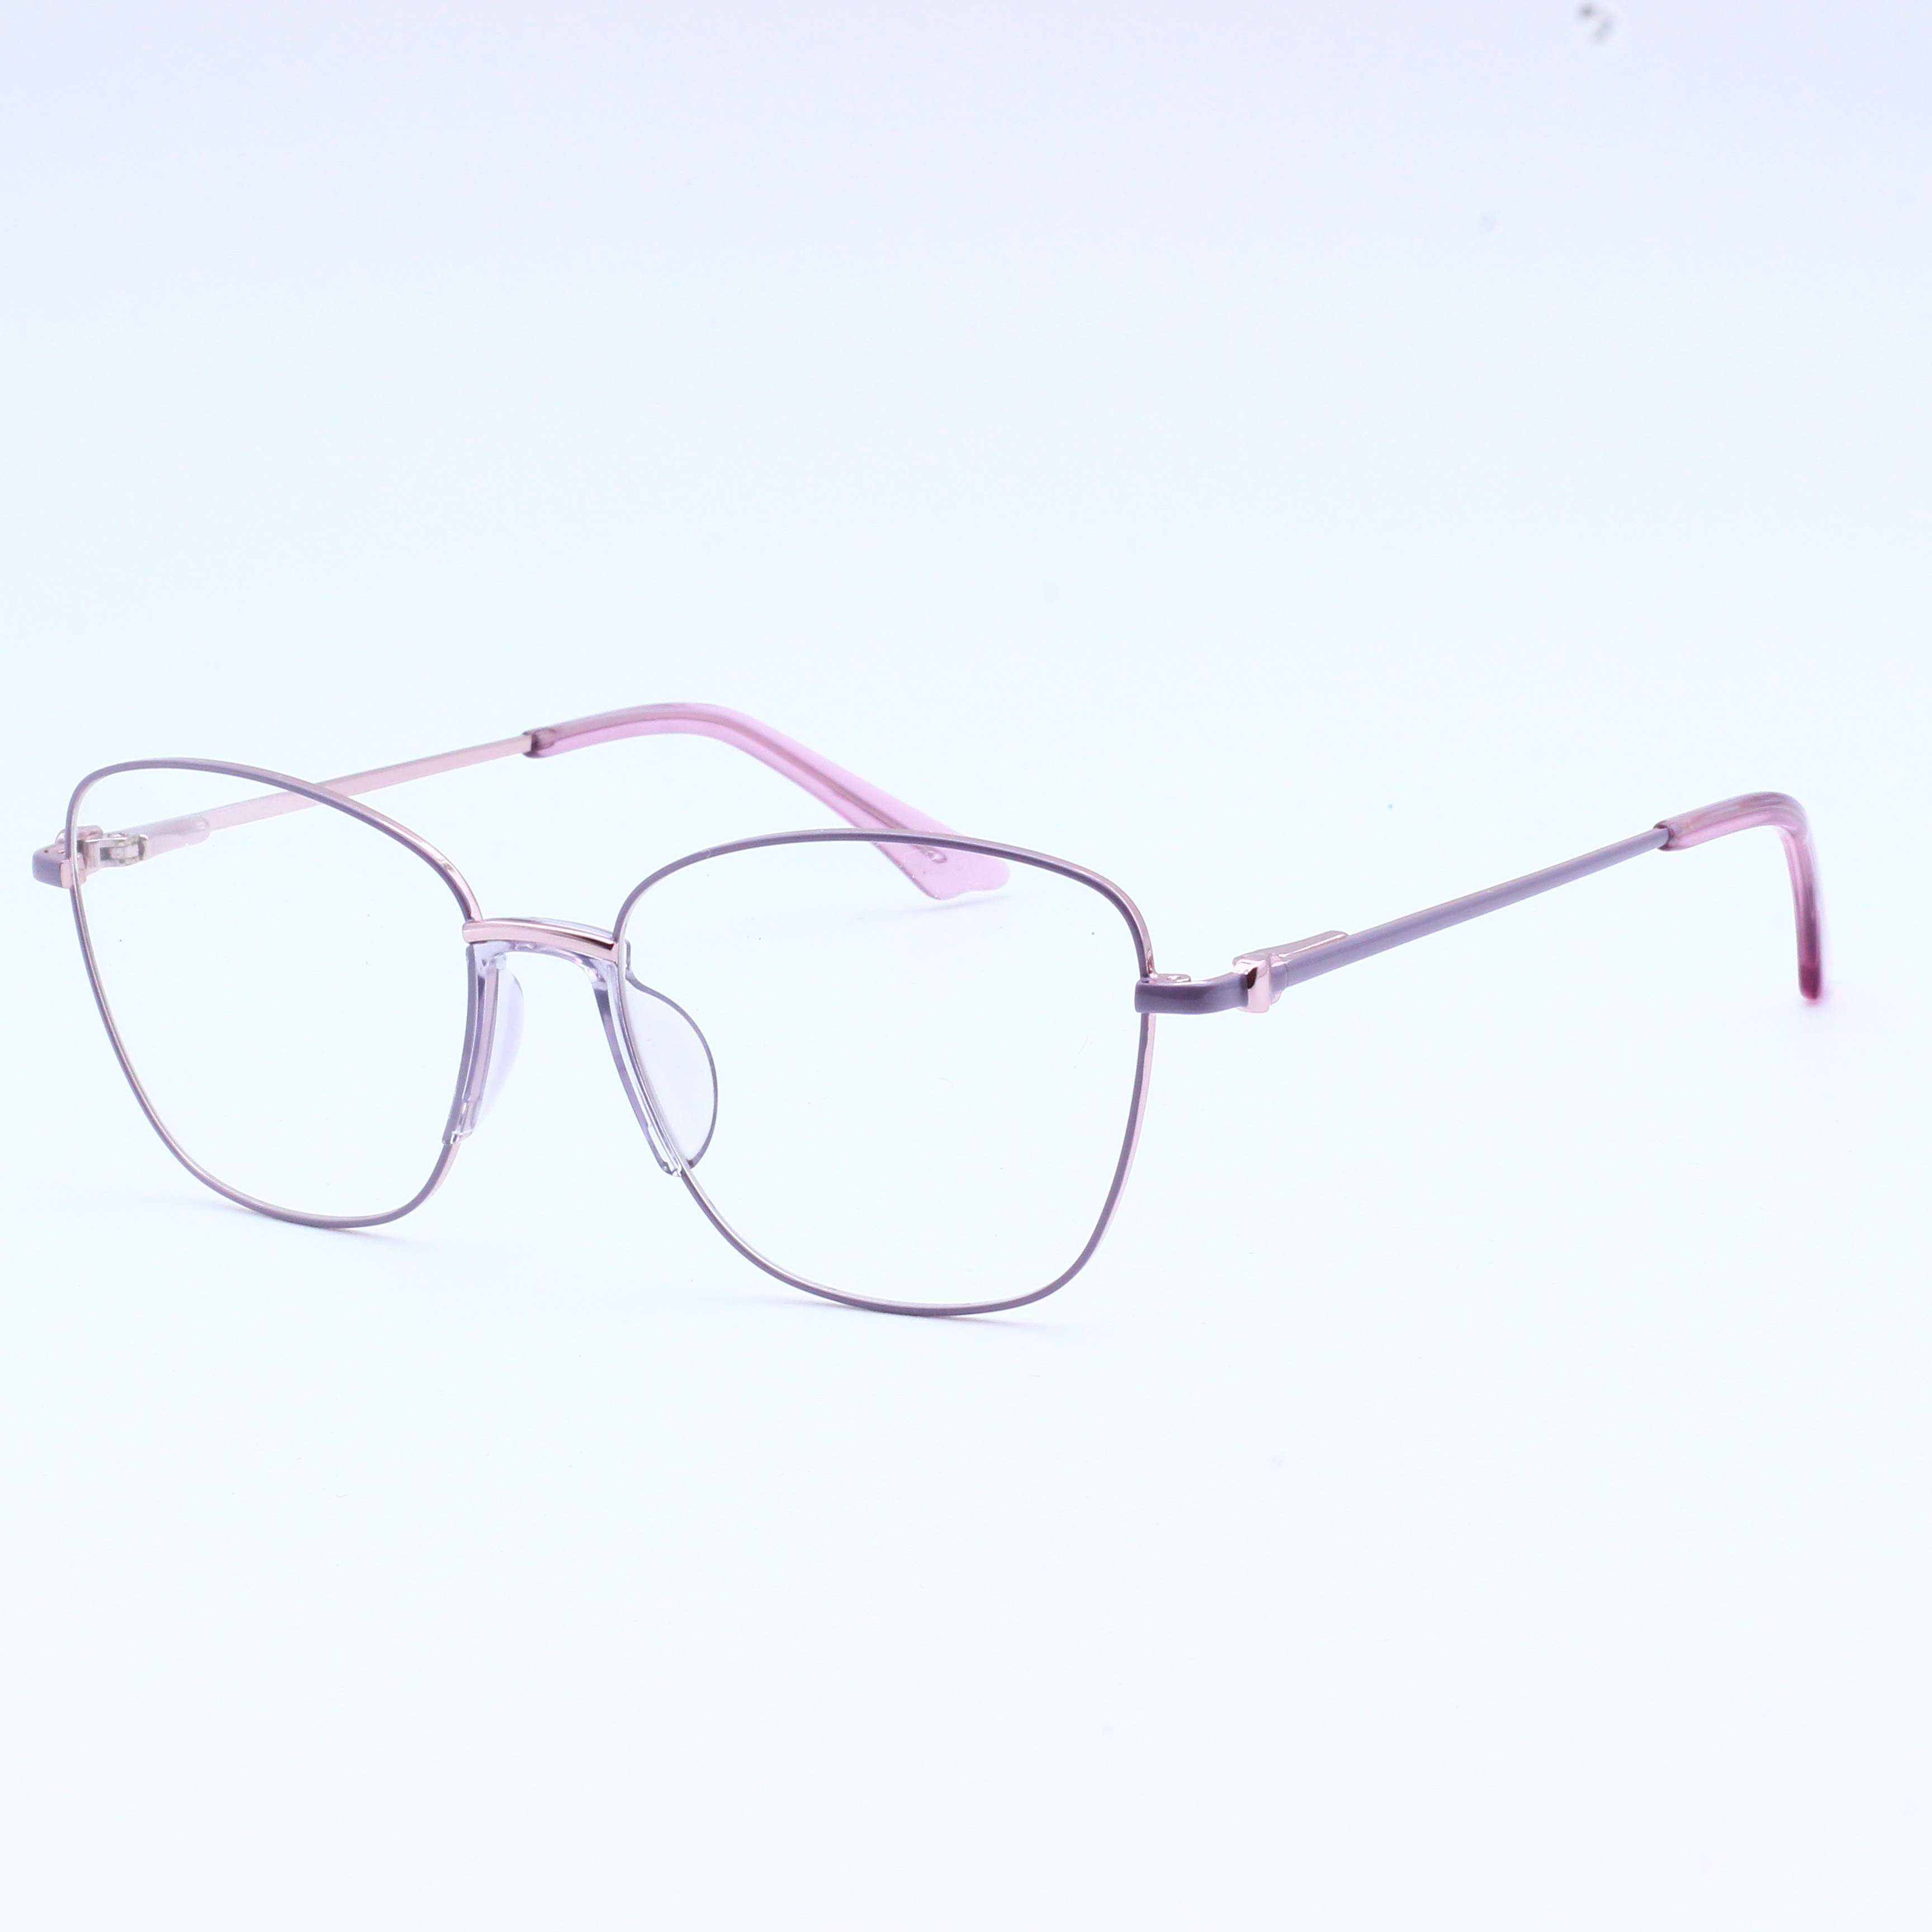 Anti Blue Rays Glasses Spring Leg Eyeglasses Optical Frames (10)